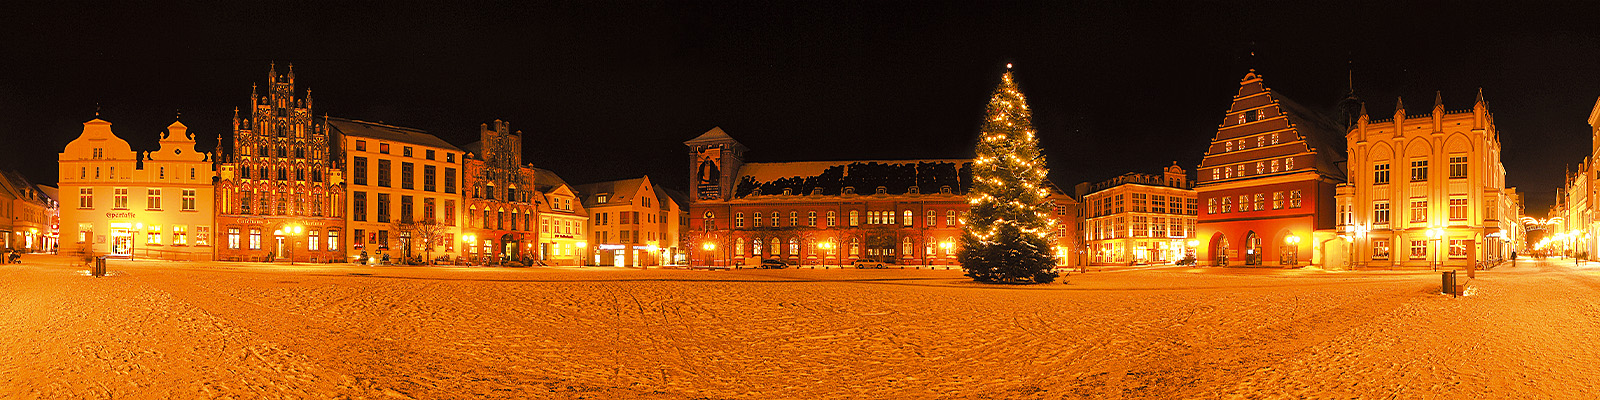 Motiv: Greifswald Weihnachtlicher Markt - Motivnummer: wei-hgw-07